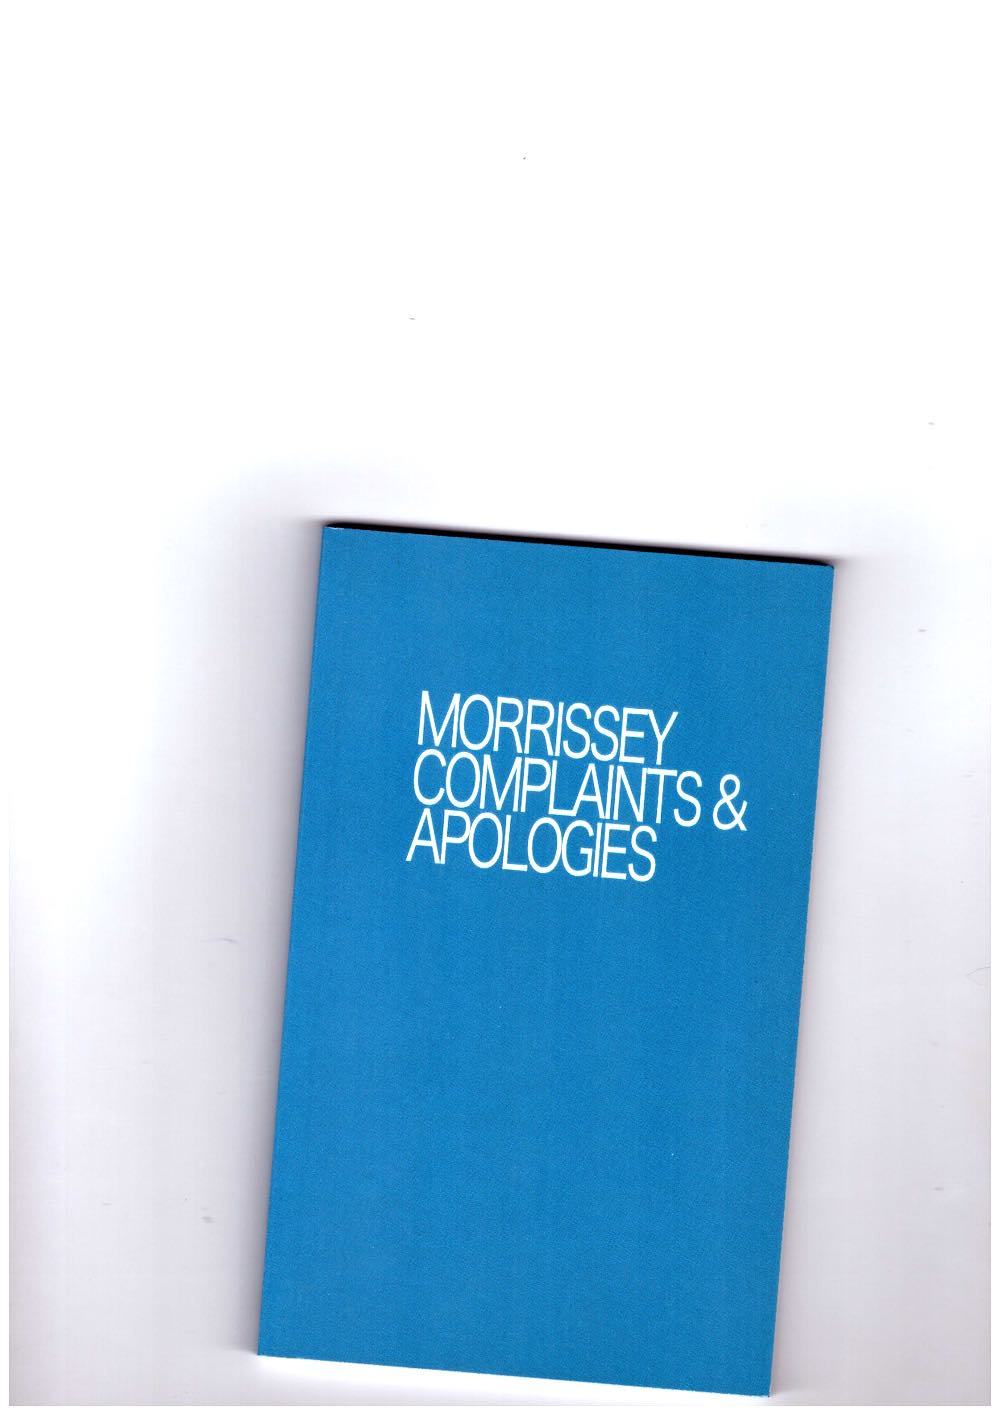 MORRISSEY - Morrissey Complaints & Apologies